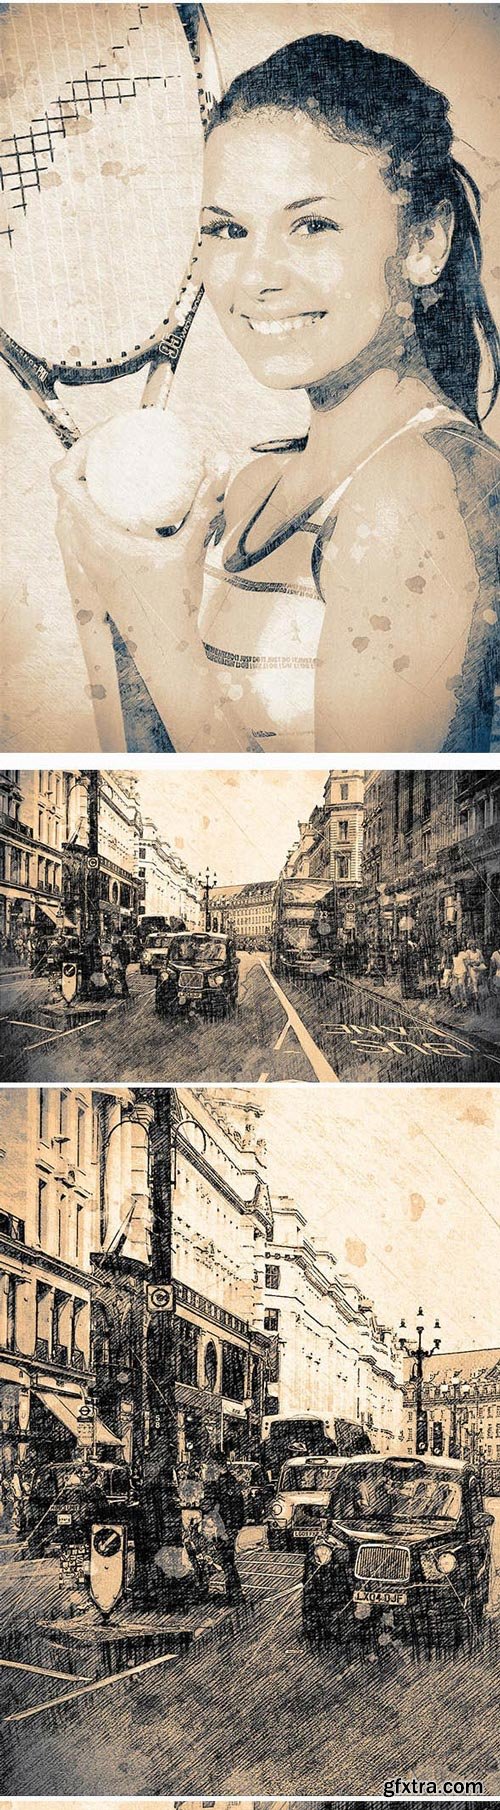 GraphicRiver - Vintage Sketch Photoshop Action - 18128171